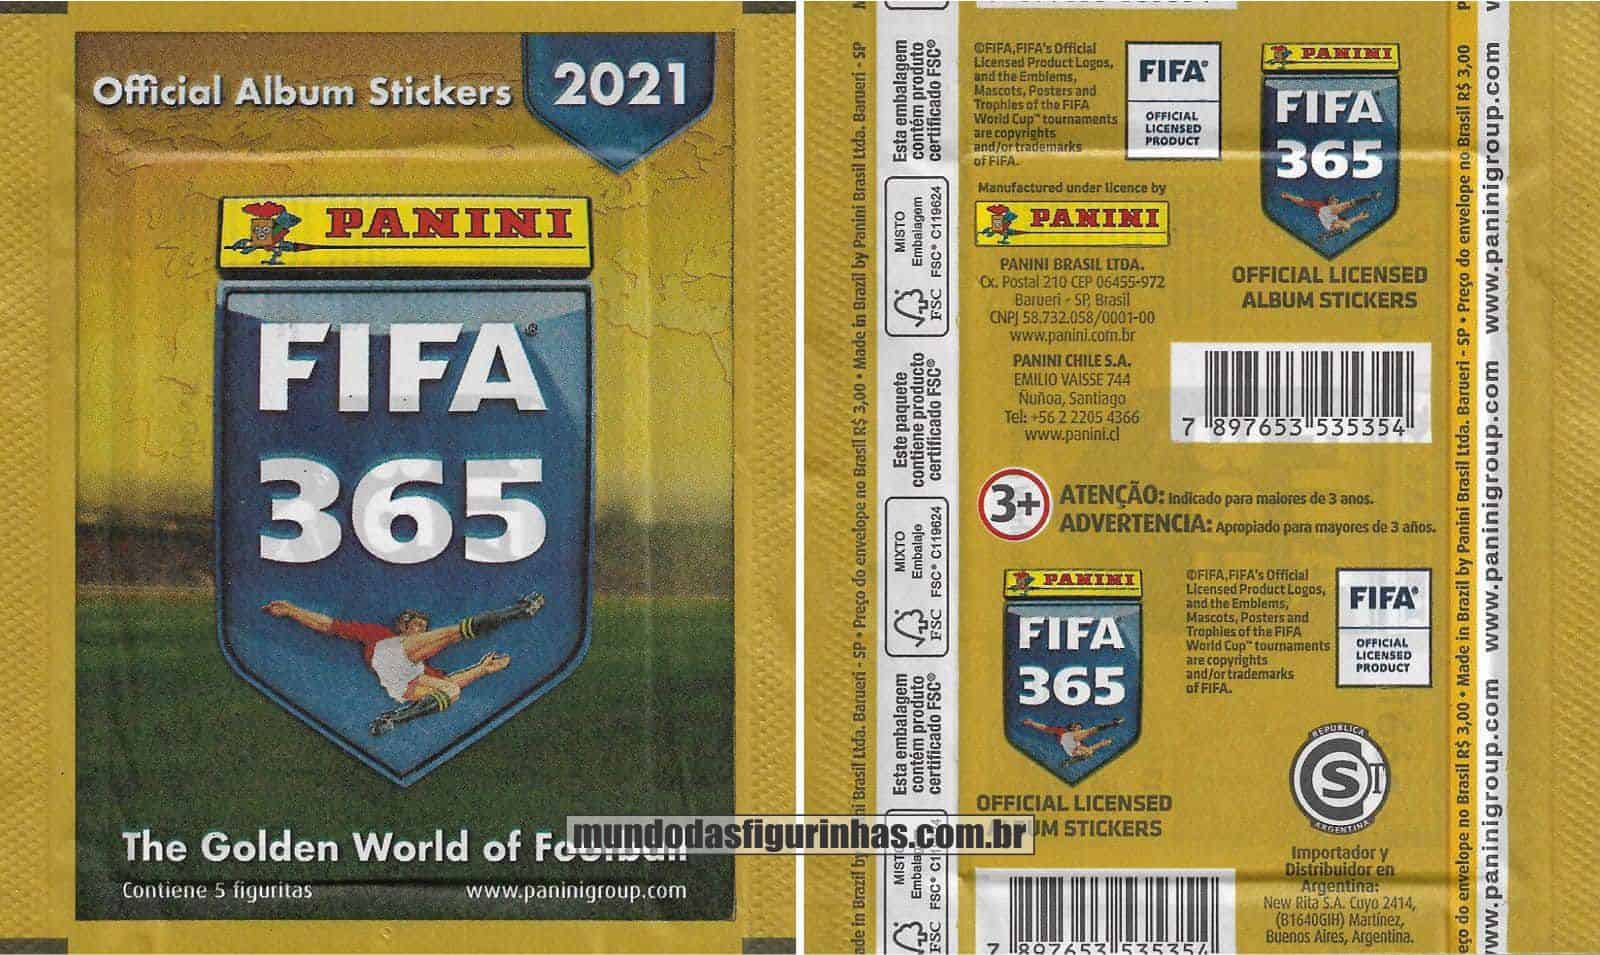 Pacotinho Fifa 365 2021 com a frase “Contiene 5 Figuritas”.